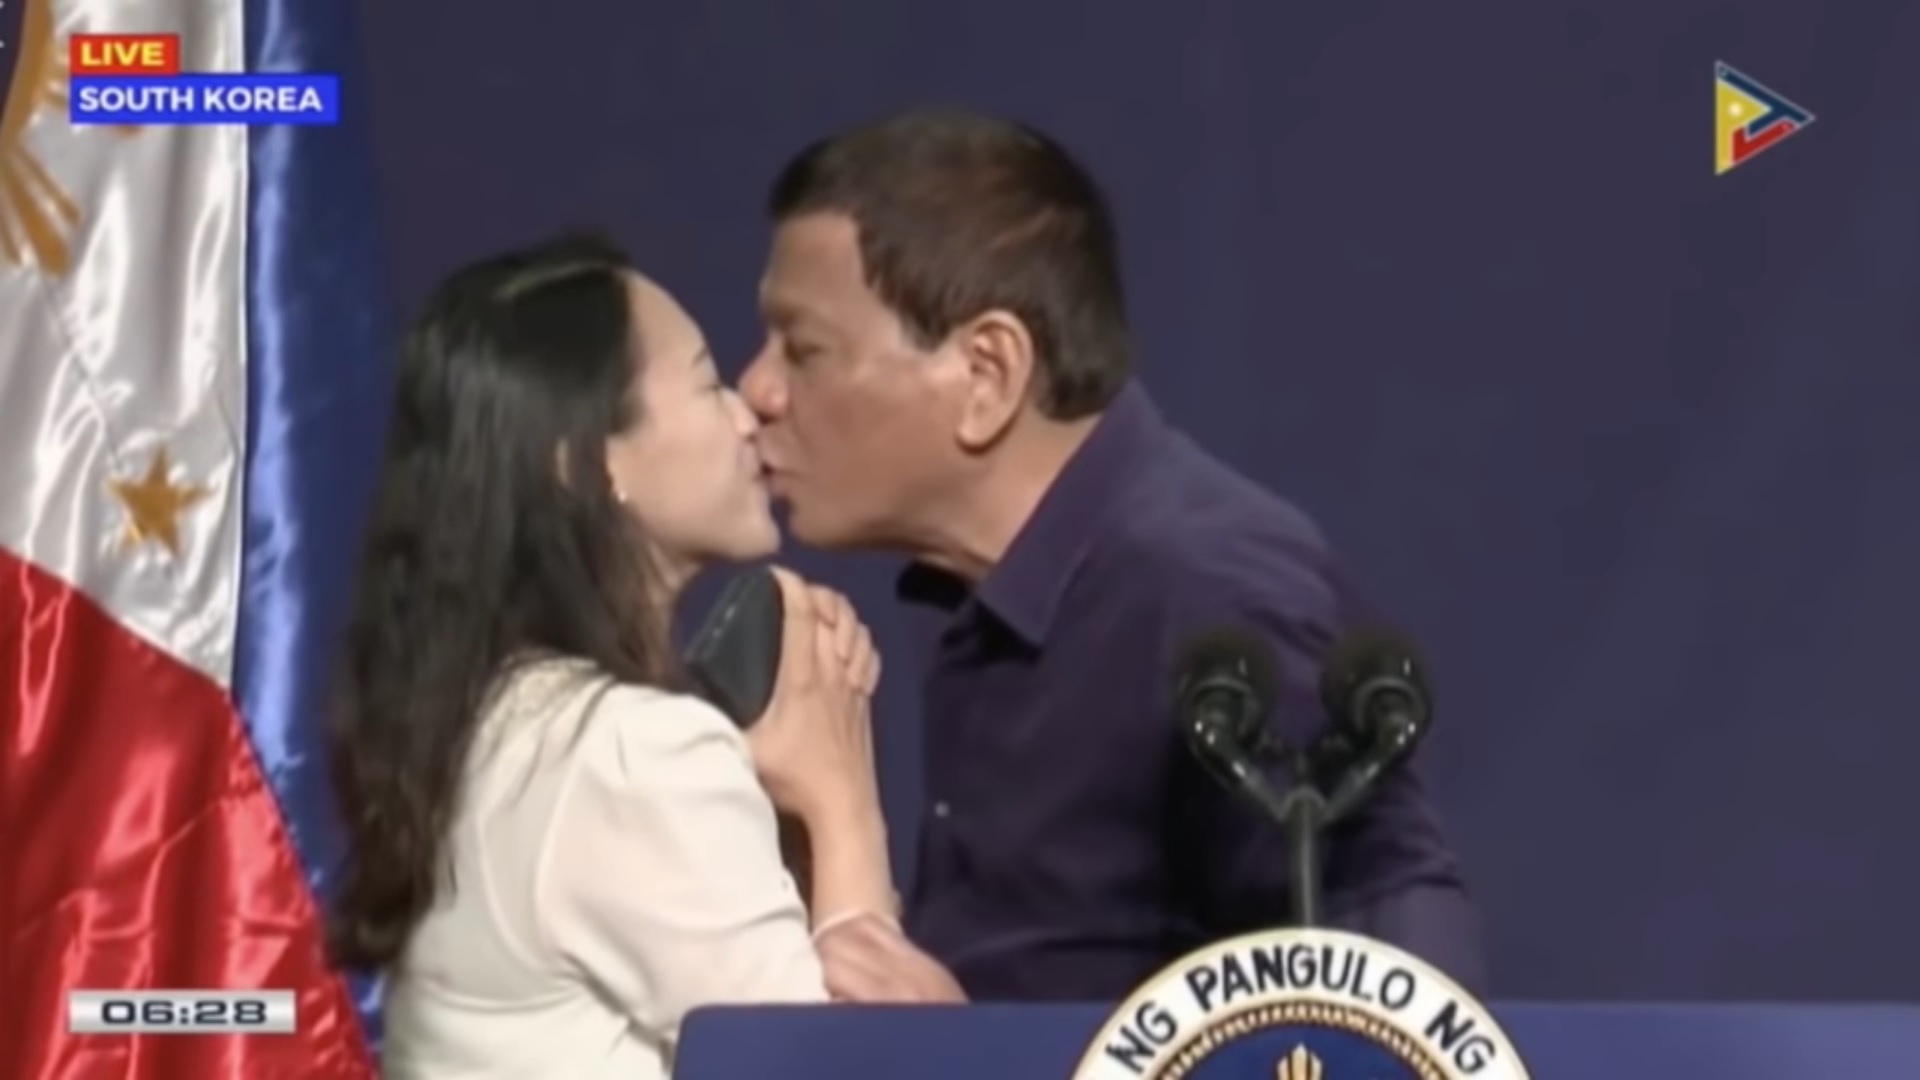 「讓我親一個」 菲律賓總統南韓吻支持者遭批